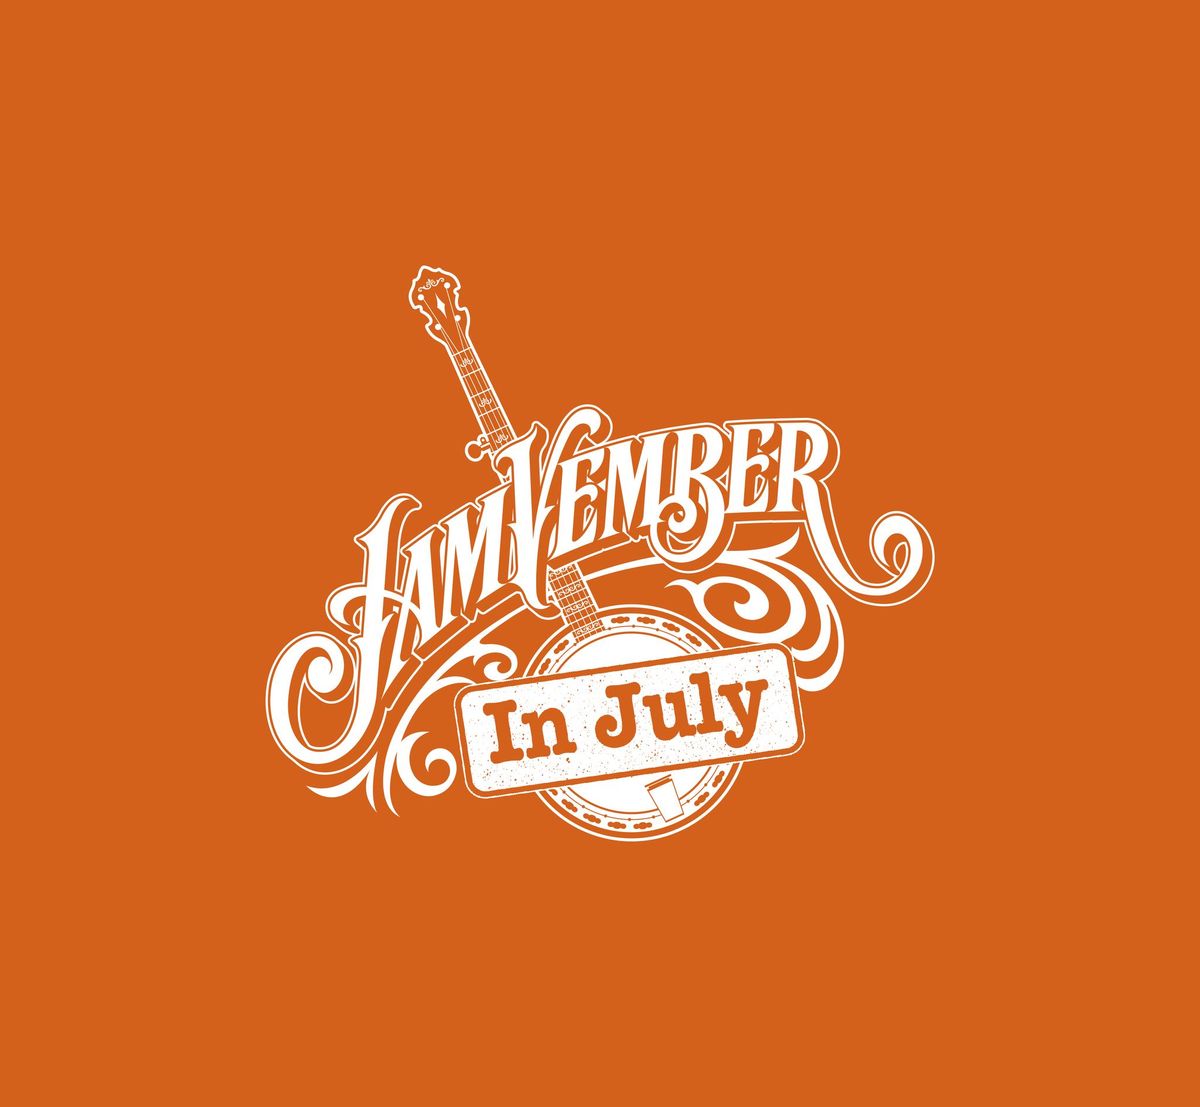 JamVember in July